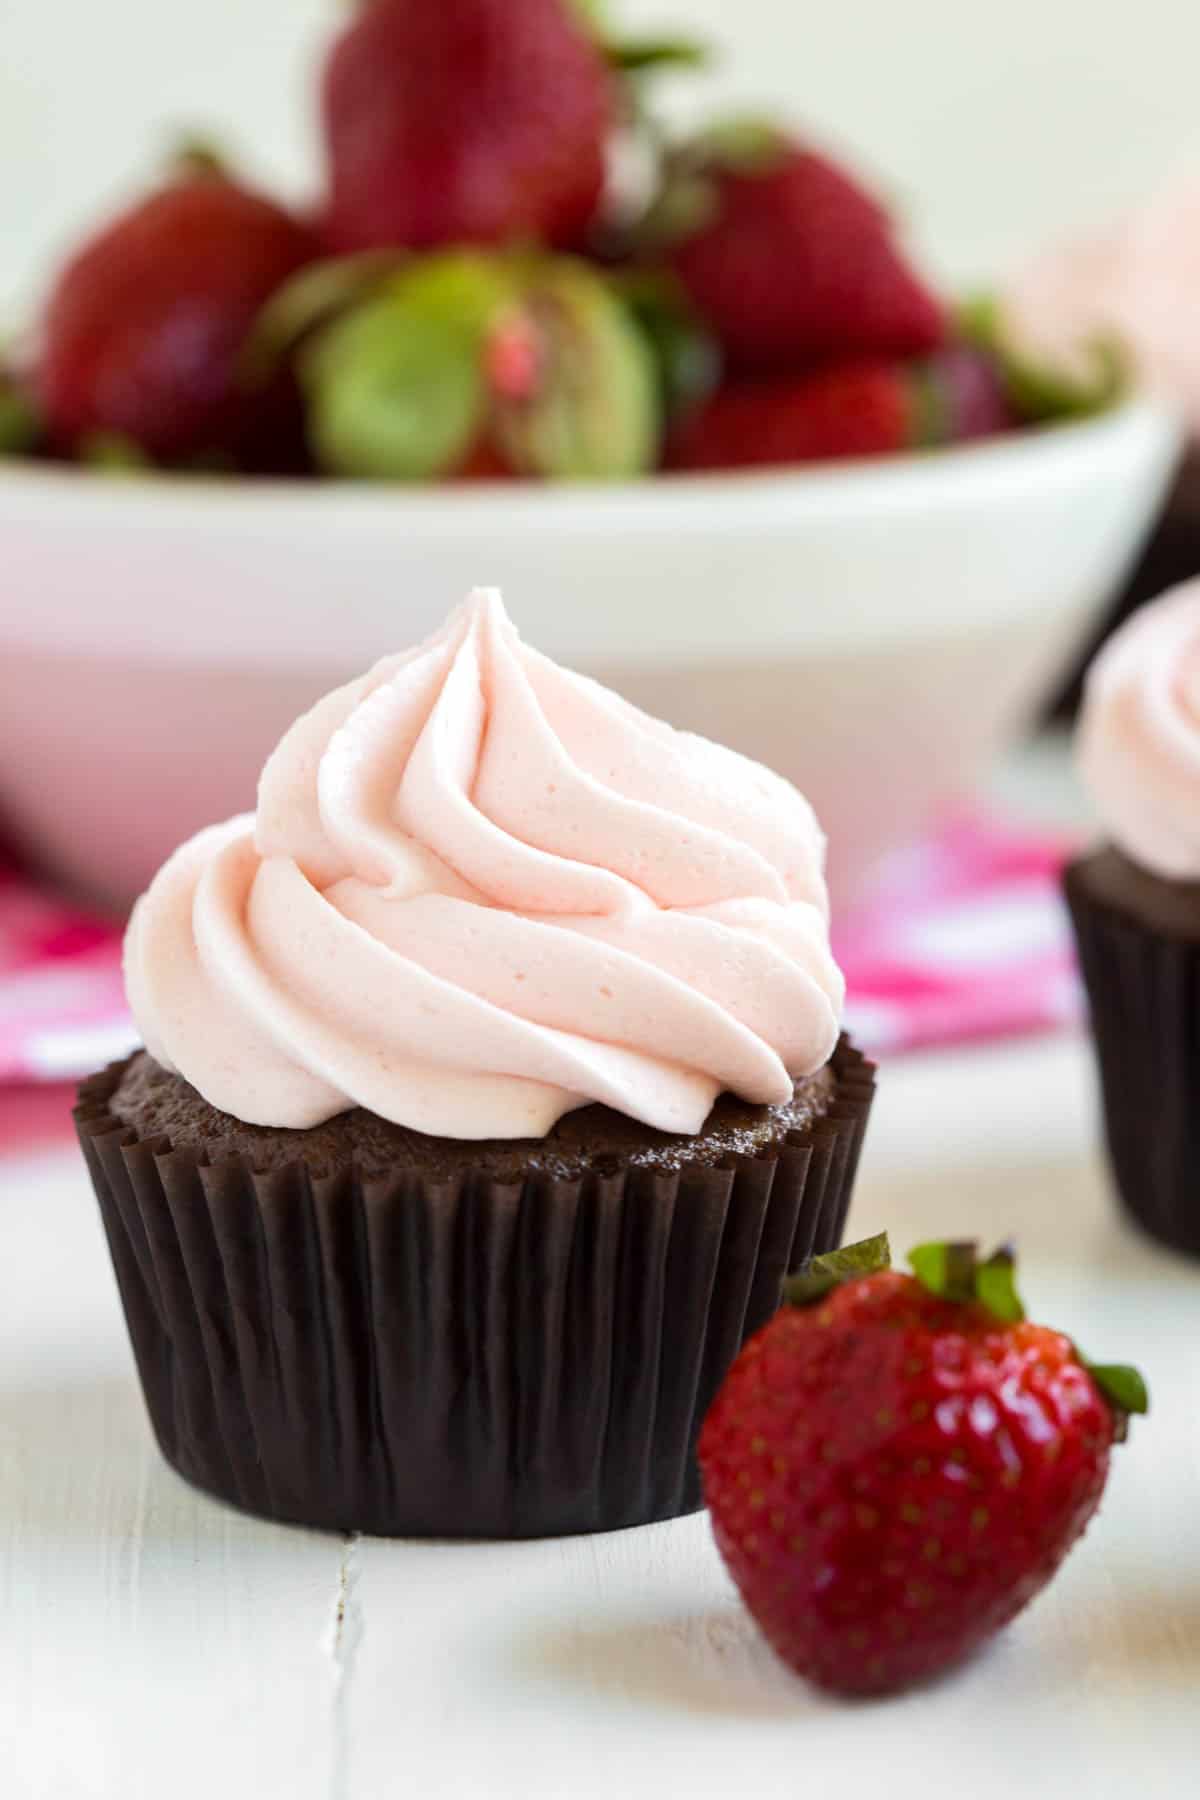 un cupcake au chocolat et à la fraise assis devant un bol de fraises